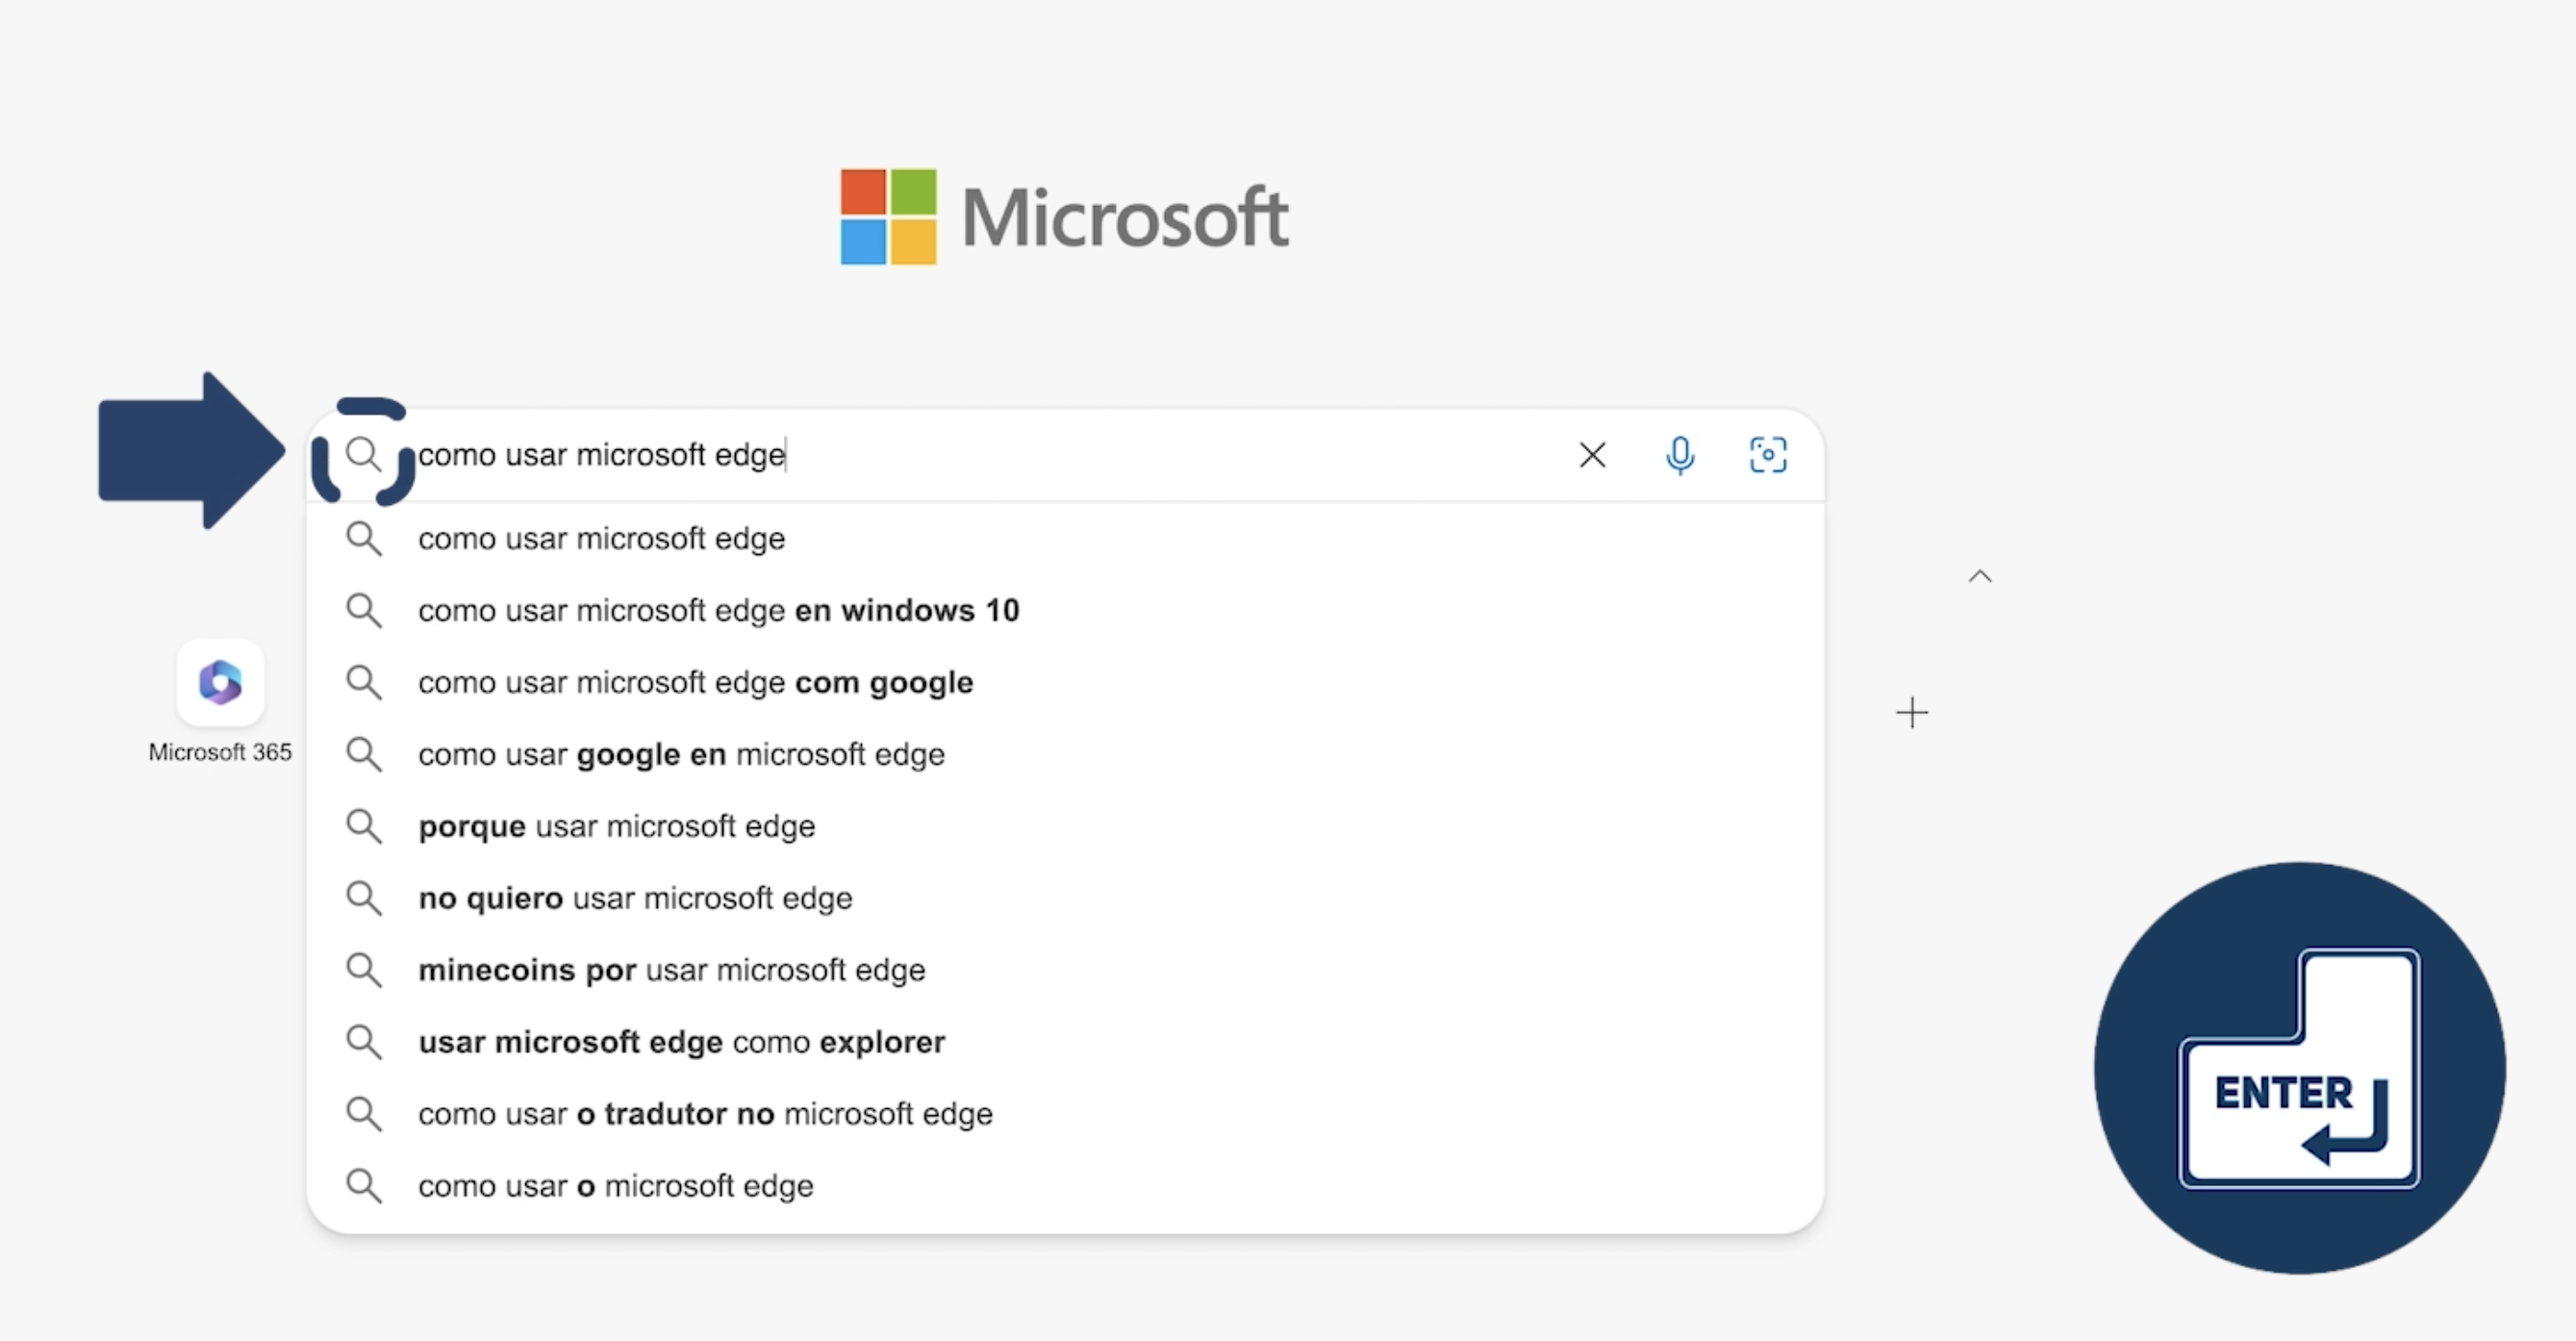 Navegar en Microsoft Edge es muy fácil, si deseas buscar un tema específico, abre Edge e ingresa la dirección web o la palabra que deseas buscar en la barra de direcciones que se encuentra en la parte superior del navegador y presiona la tecla Enter o haz clic en el botón Ir para acceder al sitio web.